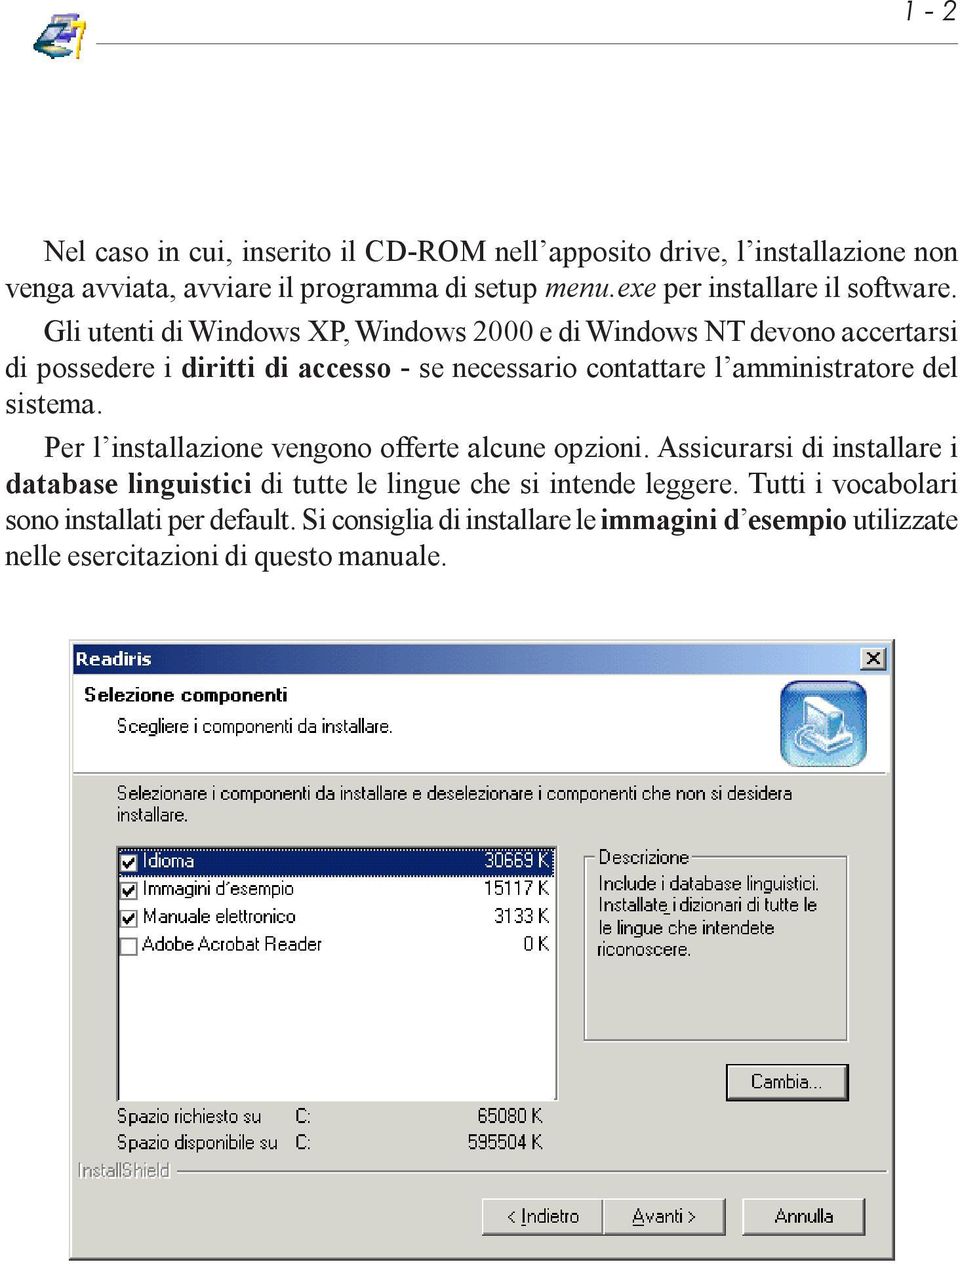 Gli utenti di Windows XP, Windows 2000 e di Windows NT devono accertarsi di possedere i diritti di accesso - se necessario contattare l amministratore del